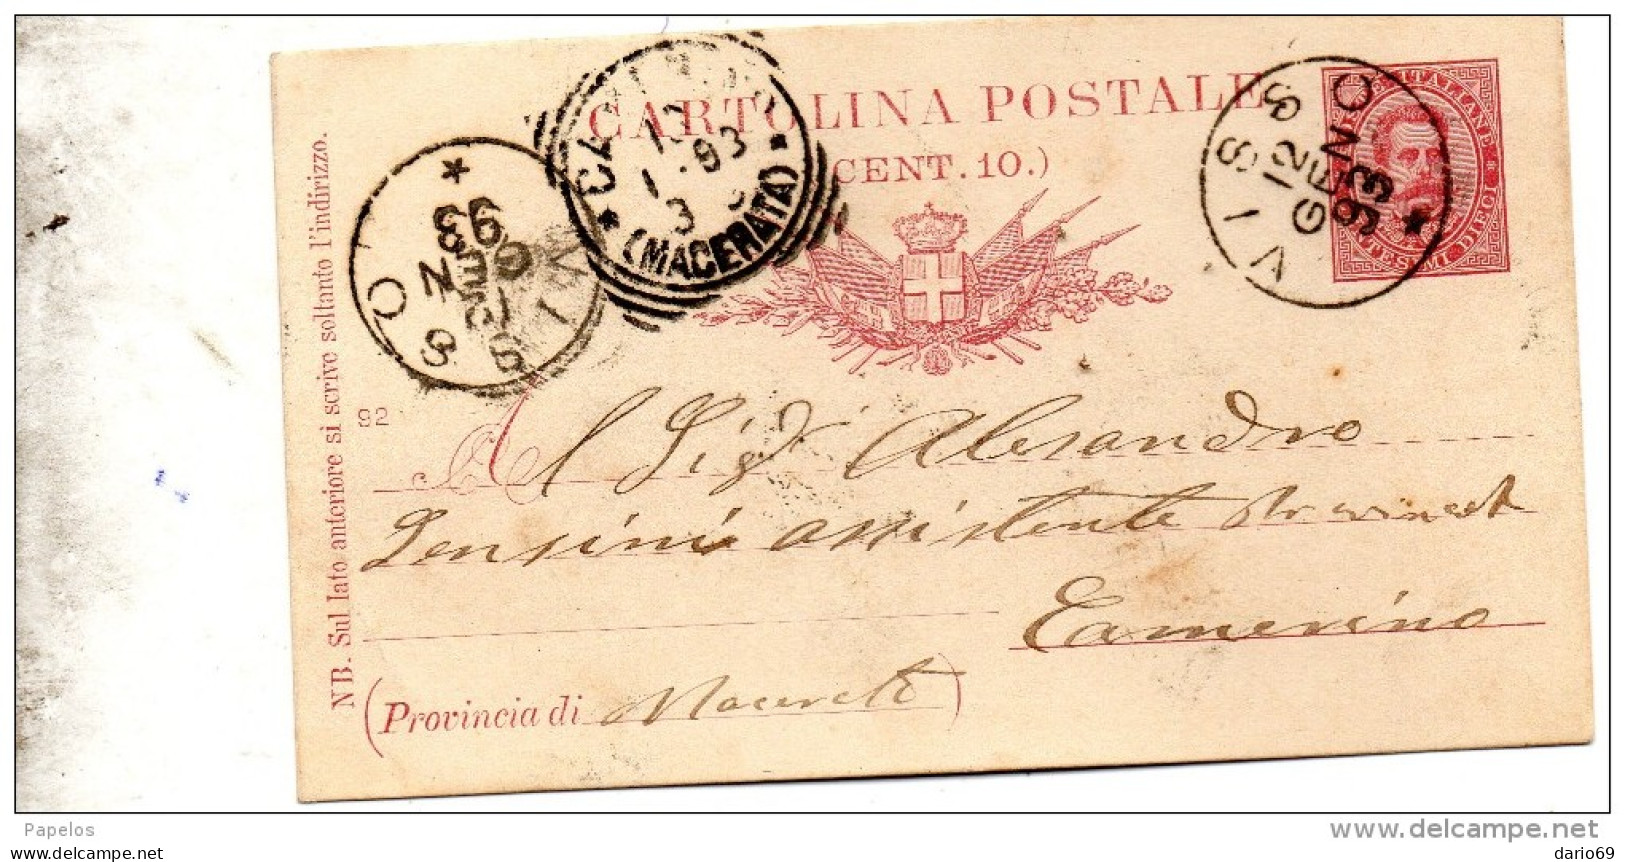 1893  CARTOLINA CON ANNULLO  VISSO MACERATA - Entero Postal